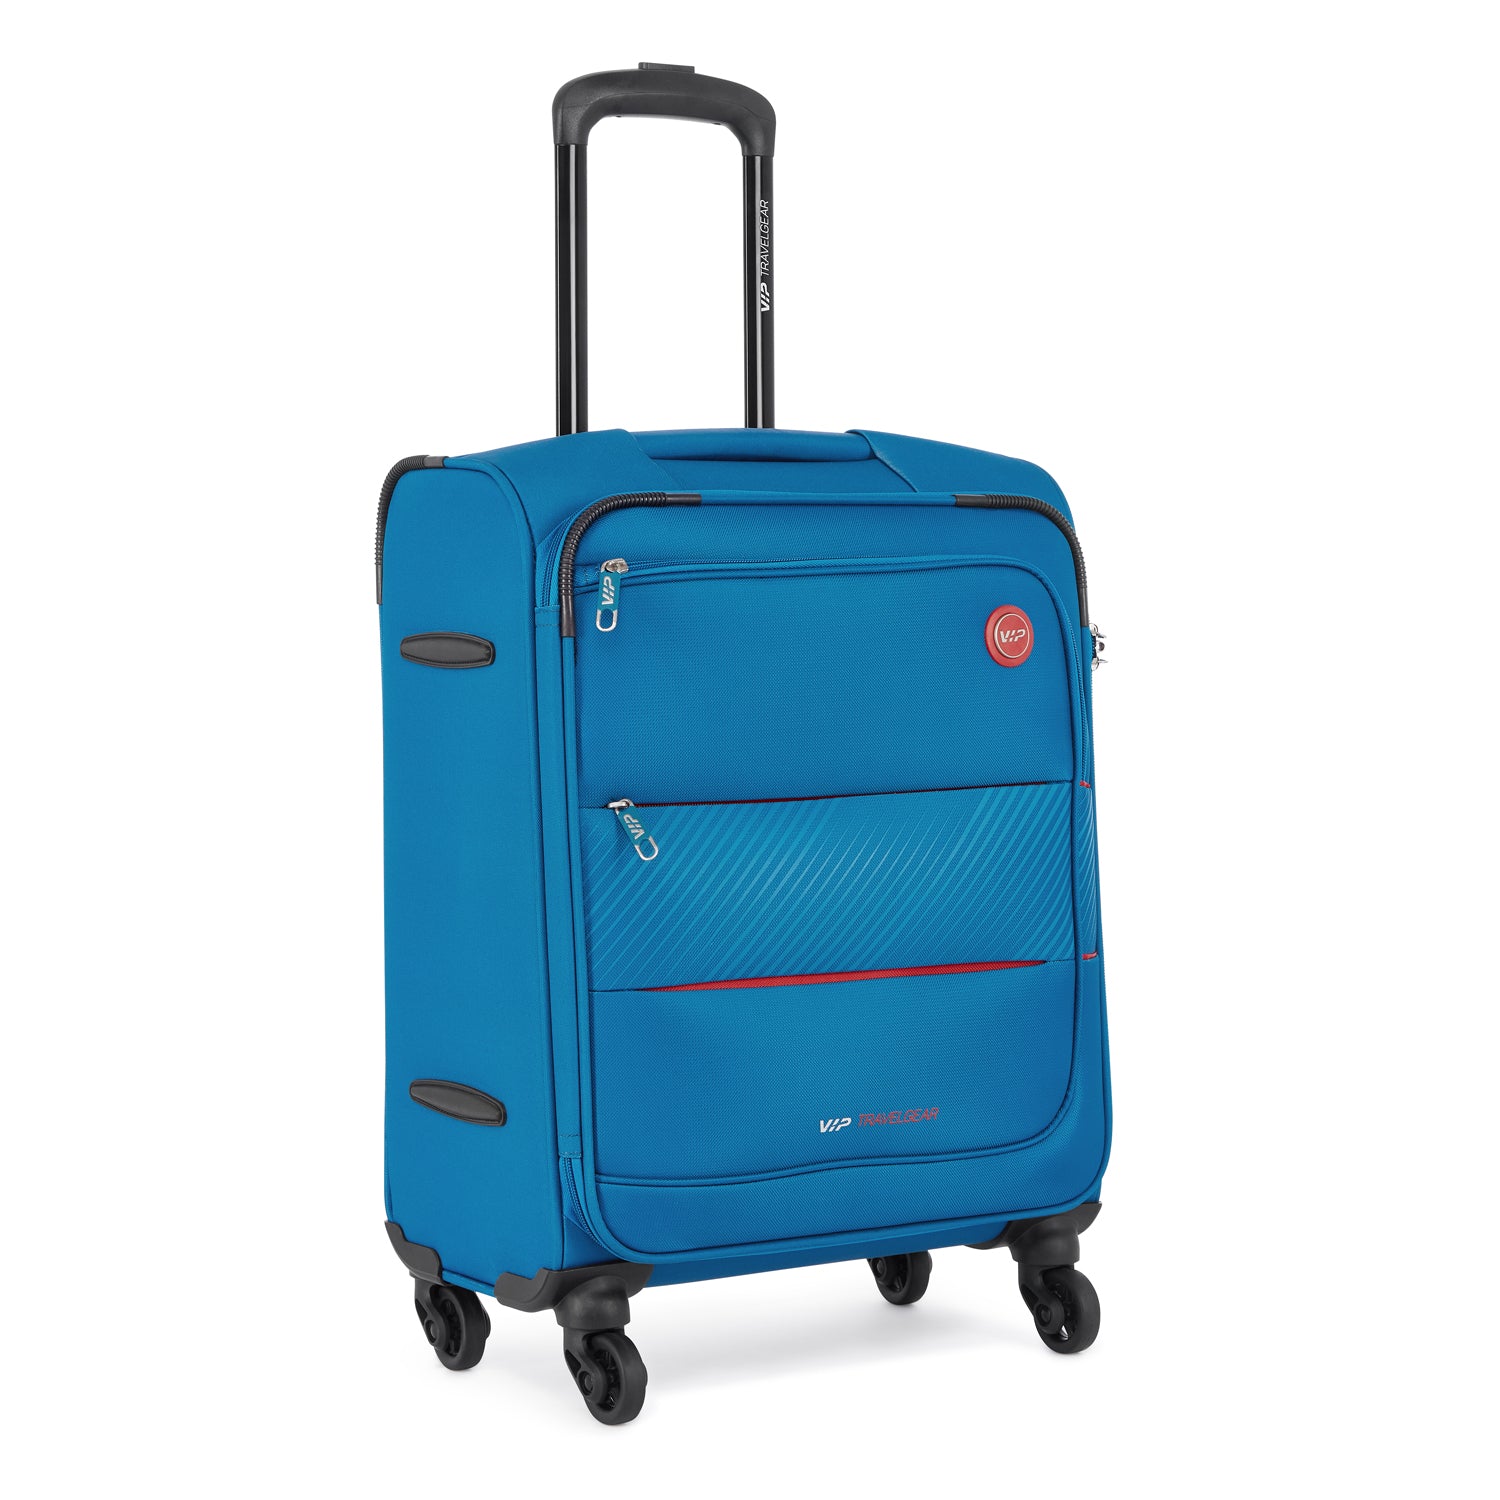 Blue Vip Trolley Bag, Size/Dimension: 55x32x22 cm